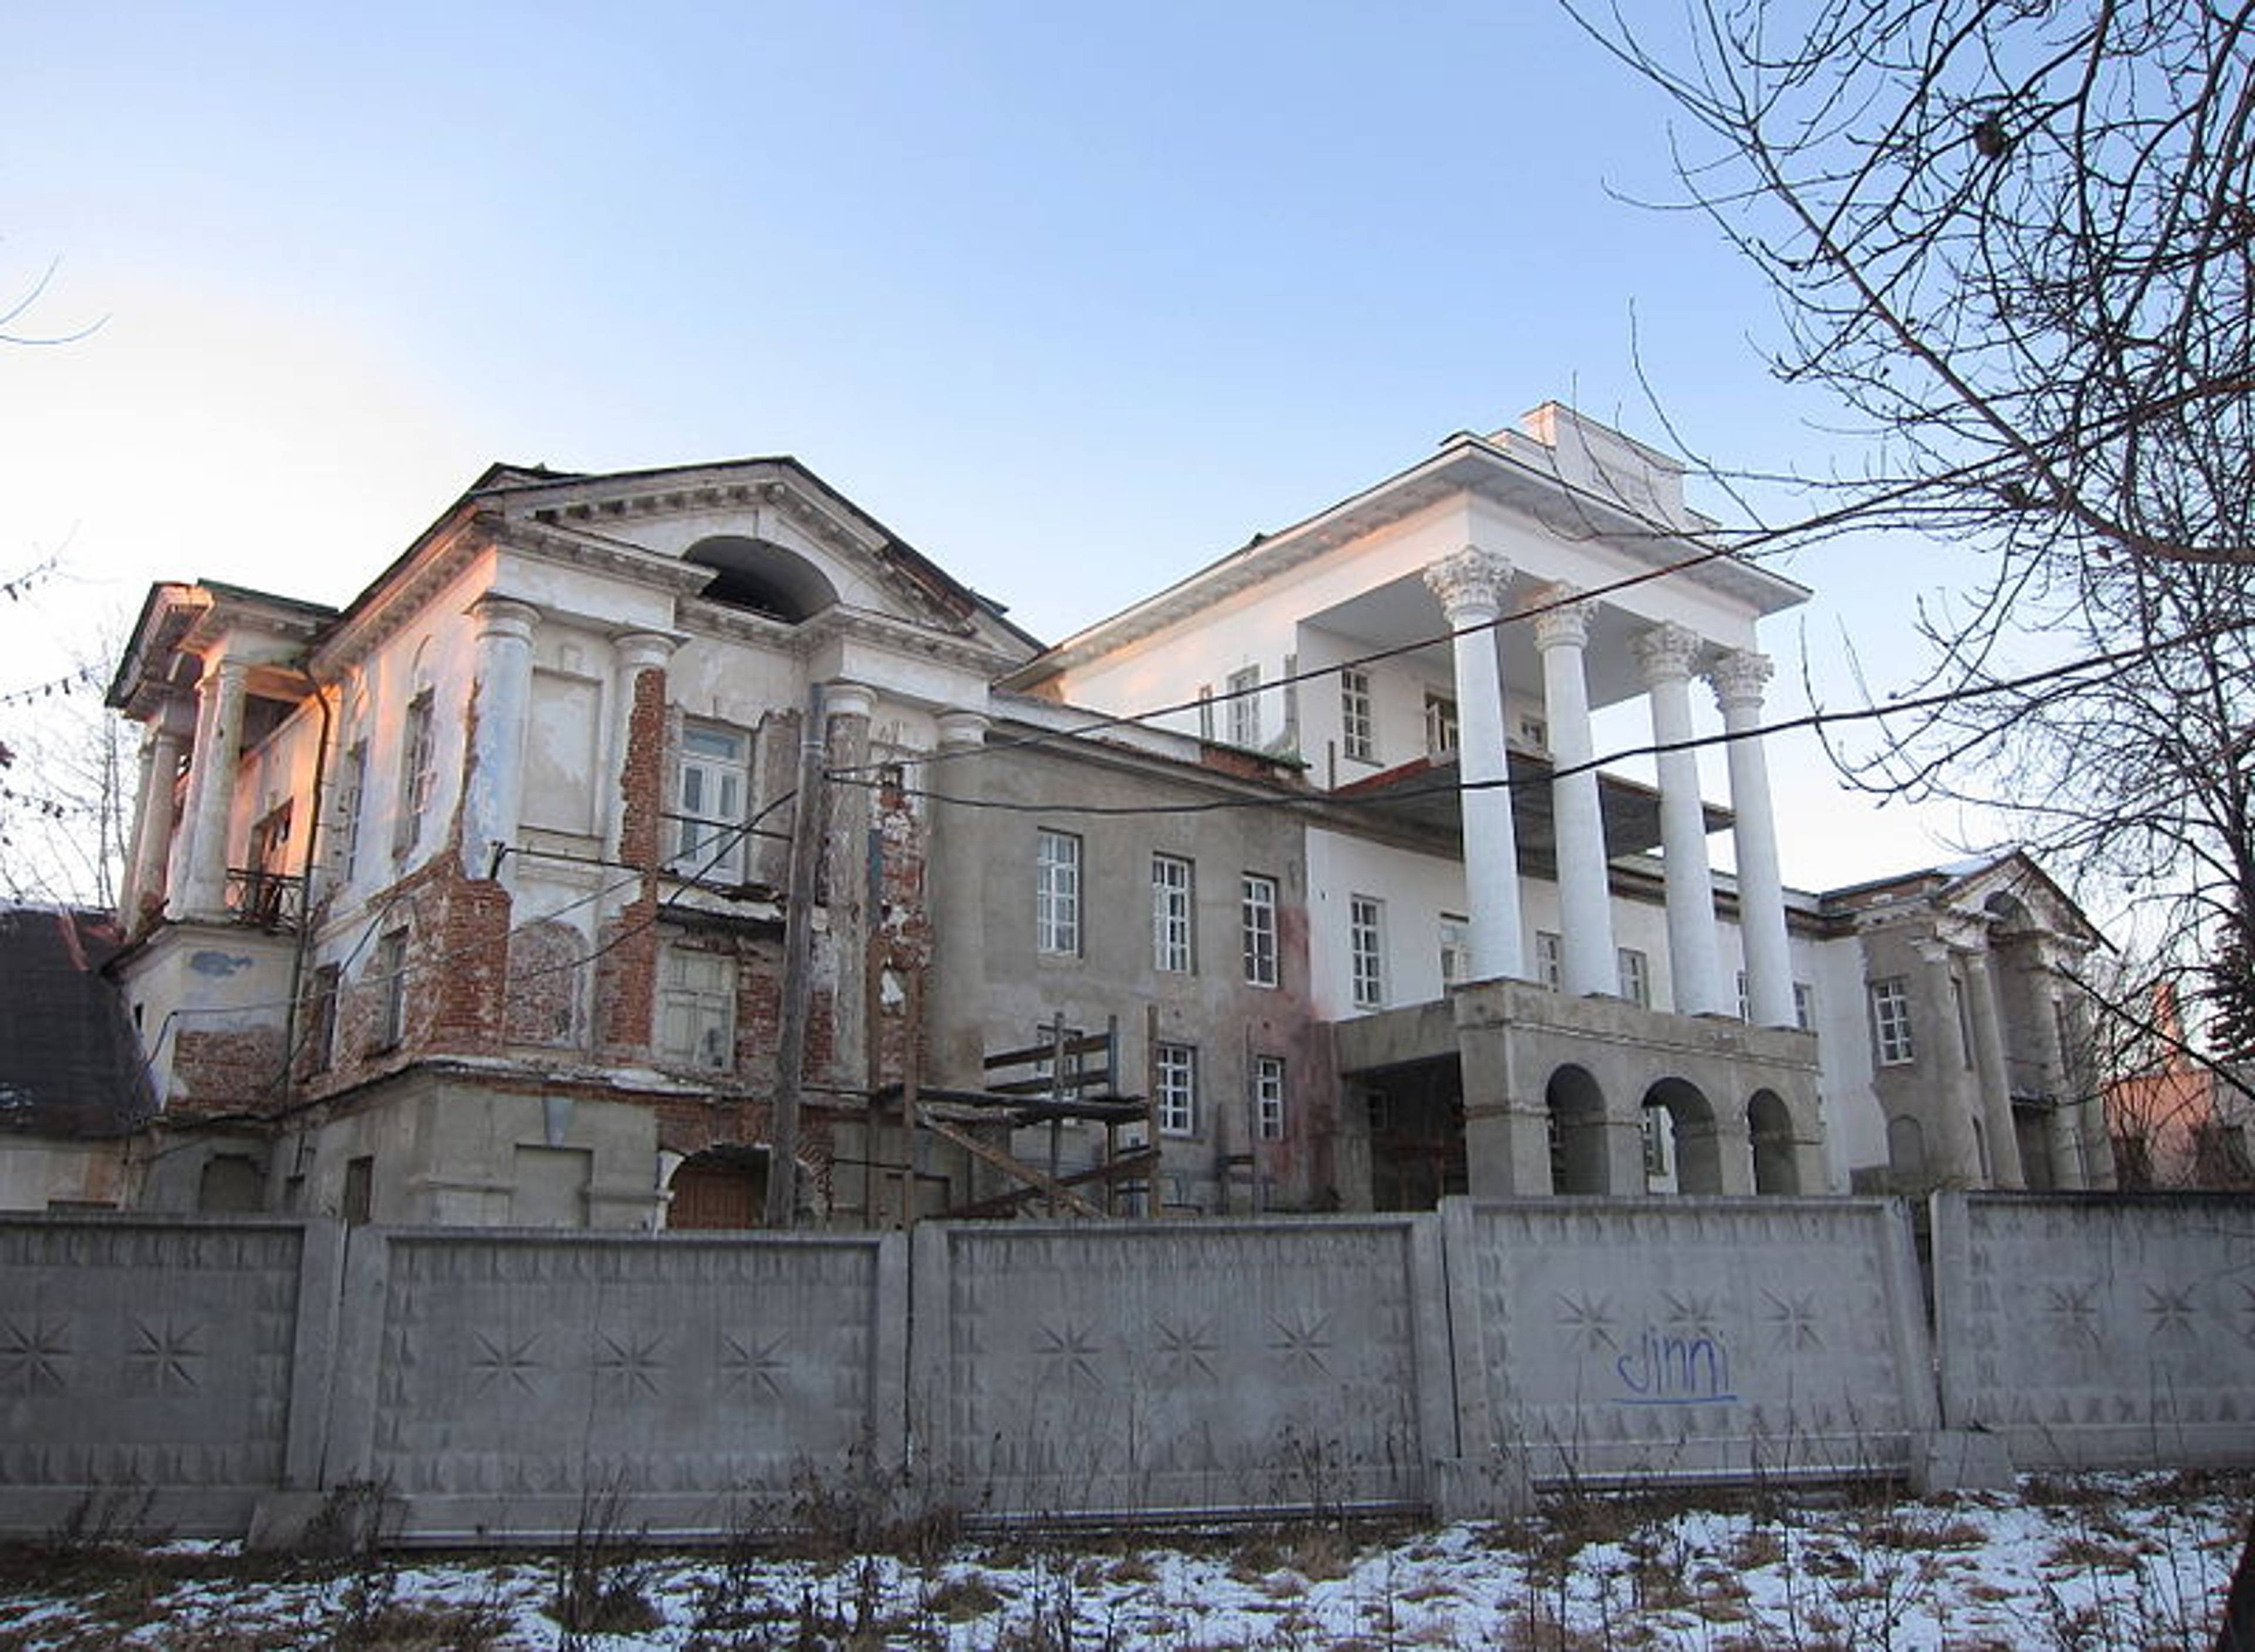 Demidovs Estate